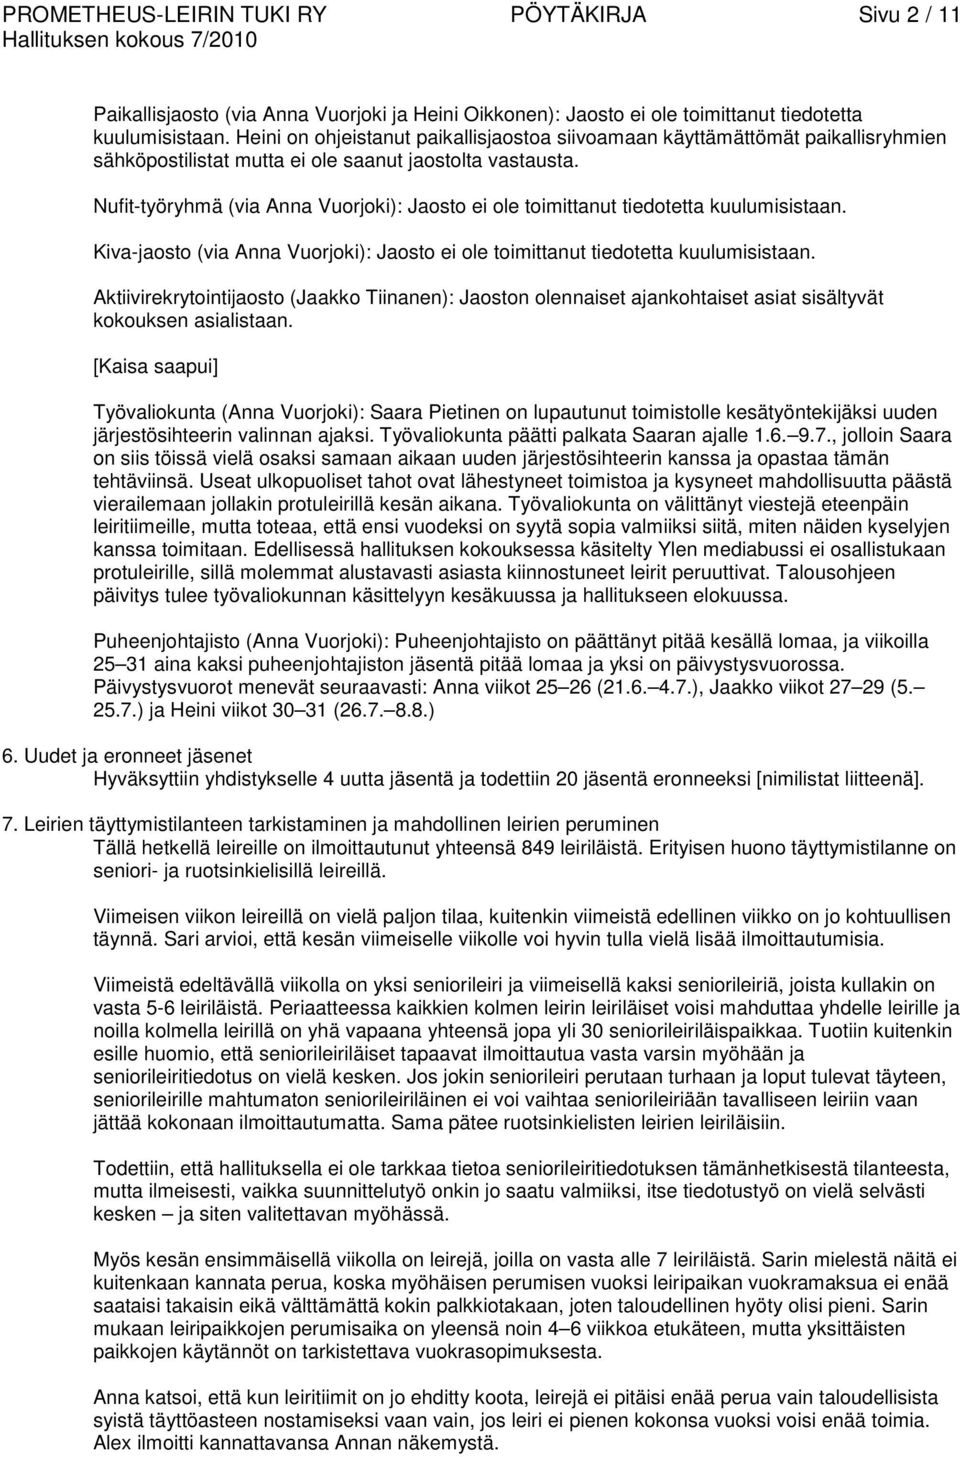 Nufit-työryhmä (via Anna Vuorjoki): Jaosto ei ole toimittanut tiedotetta kuulumisistaan. Kiva-jaosto (via Anna Vuorjoki): Jaosto ei ole toimittanut tiedotetta kuulumisistaan.